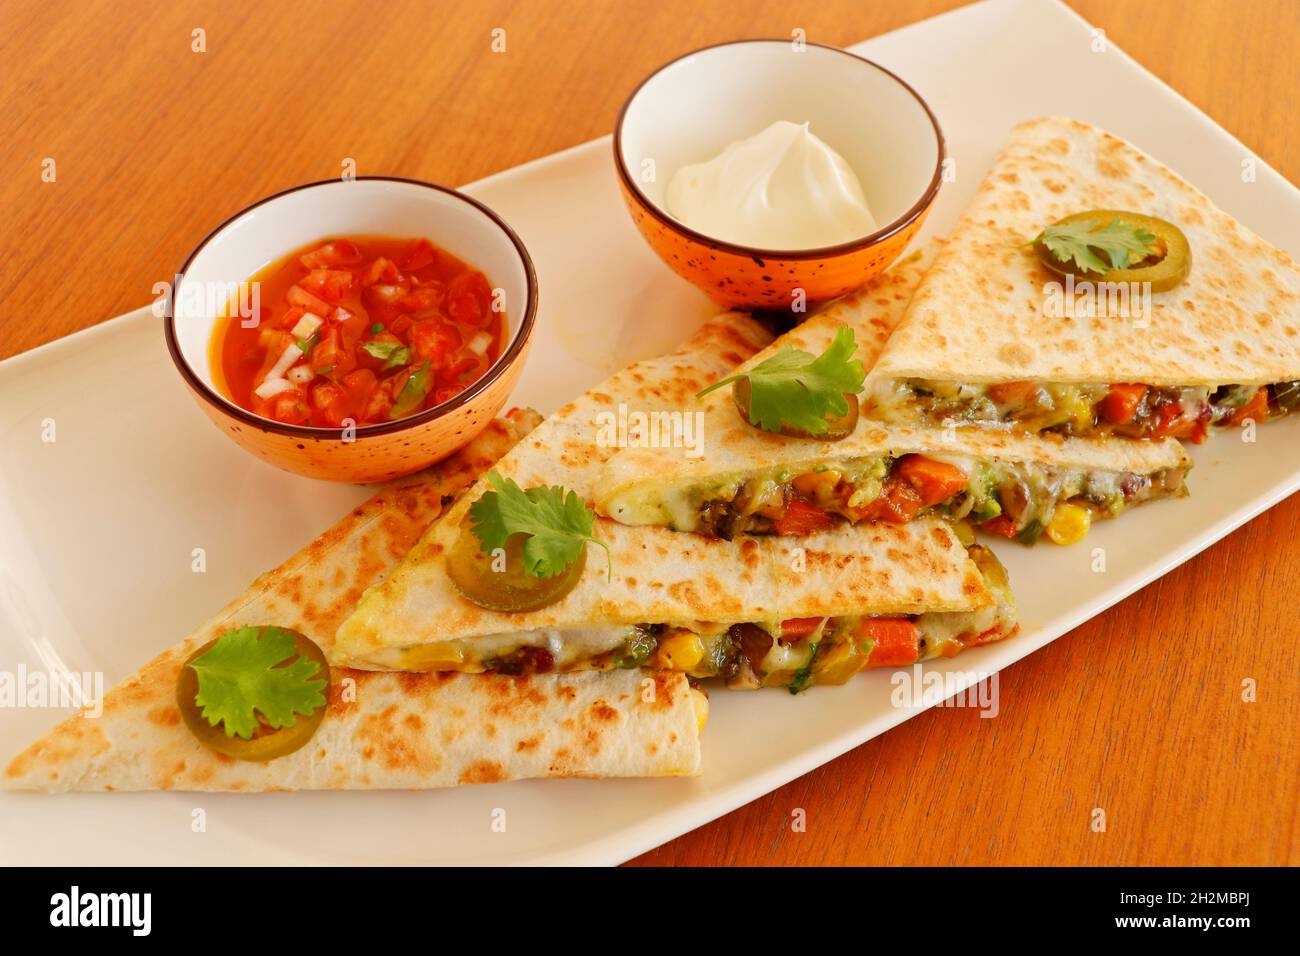 mexikanische Küche Quesadilla, würzig gekochtes Huhn und Gemüse gefüllt in Tortilla Brot mit Käse, Guacamole, Tomatensalsa und saurer Creme Stockfoto